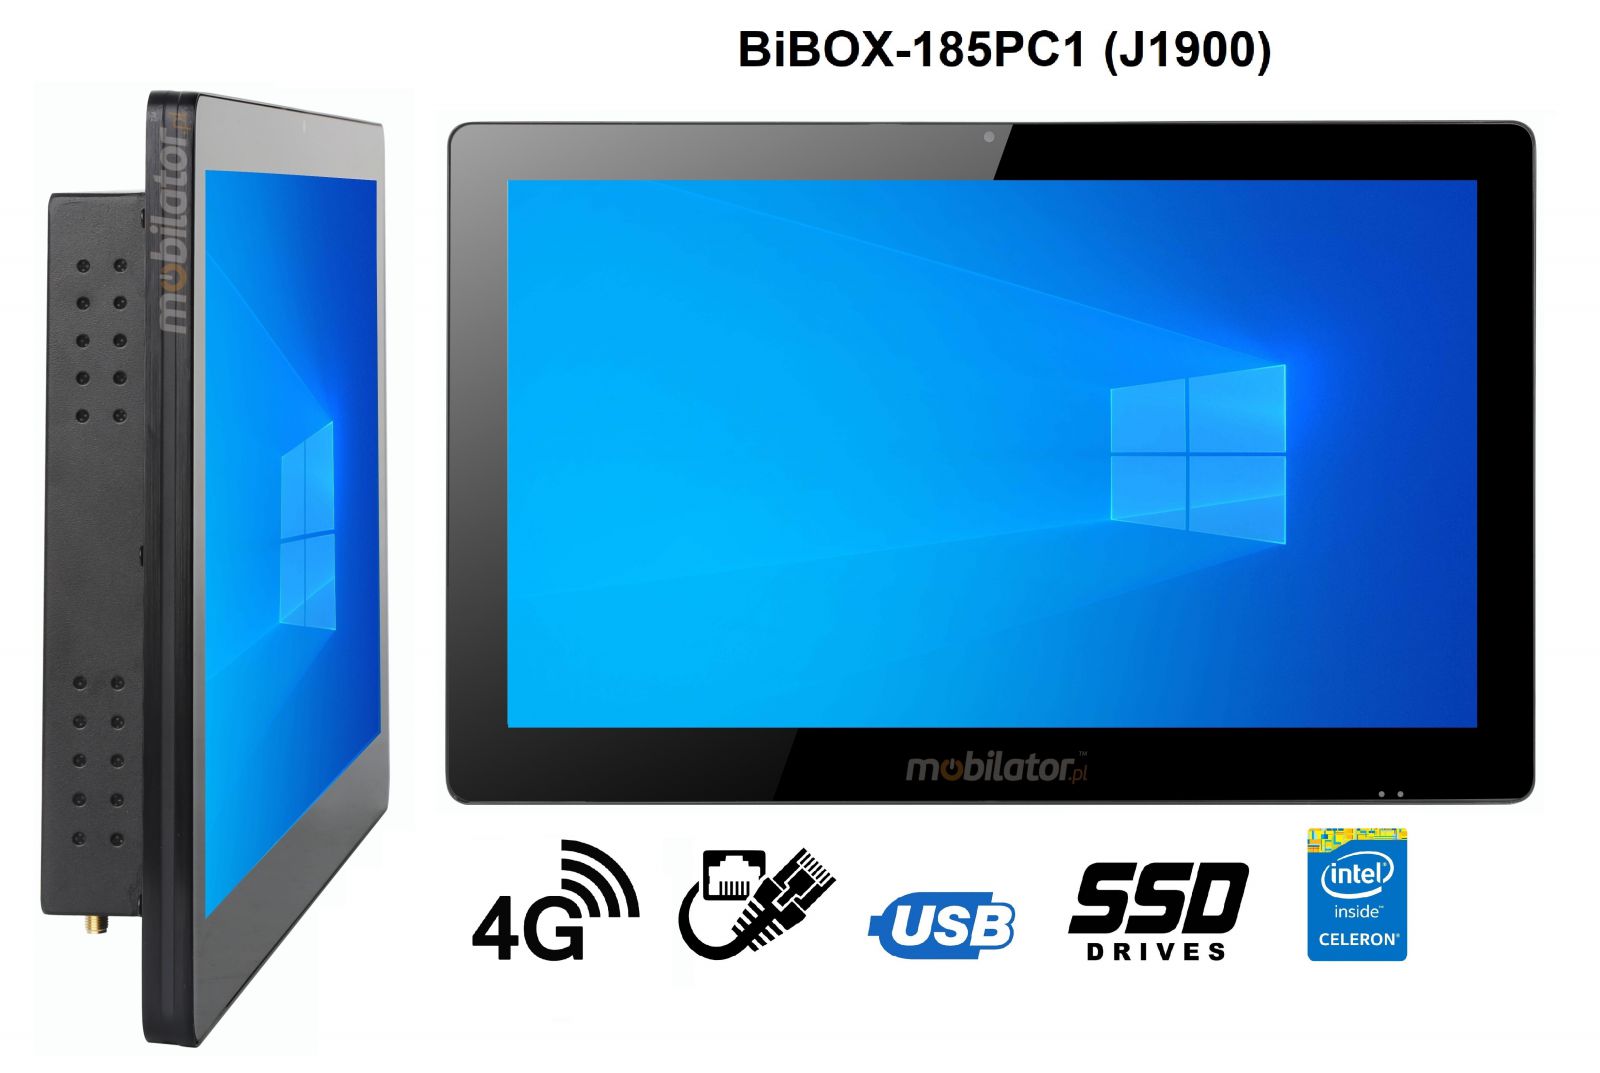 BiBOX-185PC1 (J1900) v.4 - Solidny panel komputerowy z IP65 (wodoszczelny i pyoszczelny ekran), 256 GB SSD, 4G i WiFi